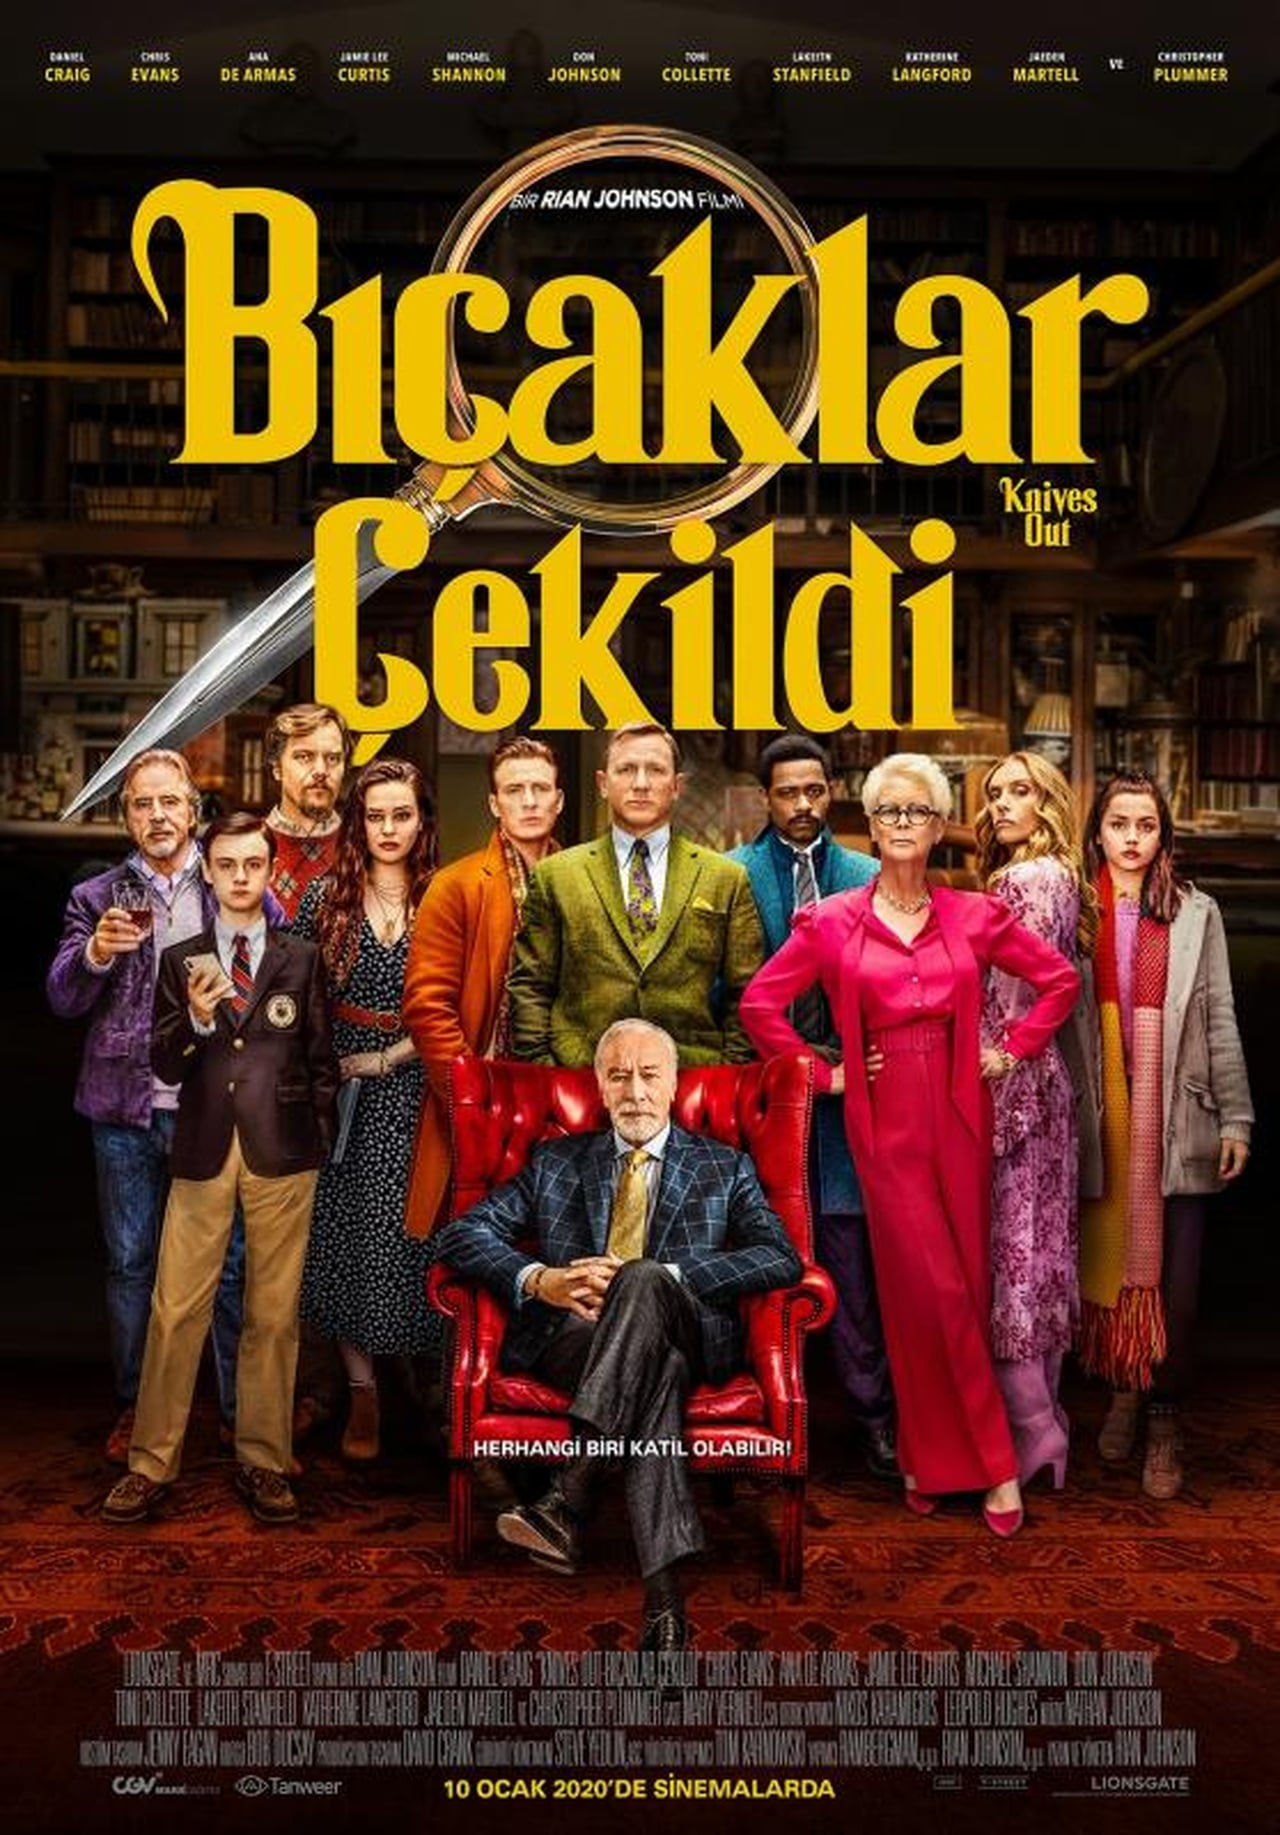 Knives Out (2019) 192Kbps 23.976Fps 48Khz 2.0Ch DigitalTV Turkish Audio TAC